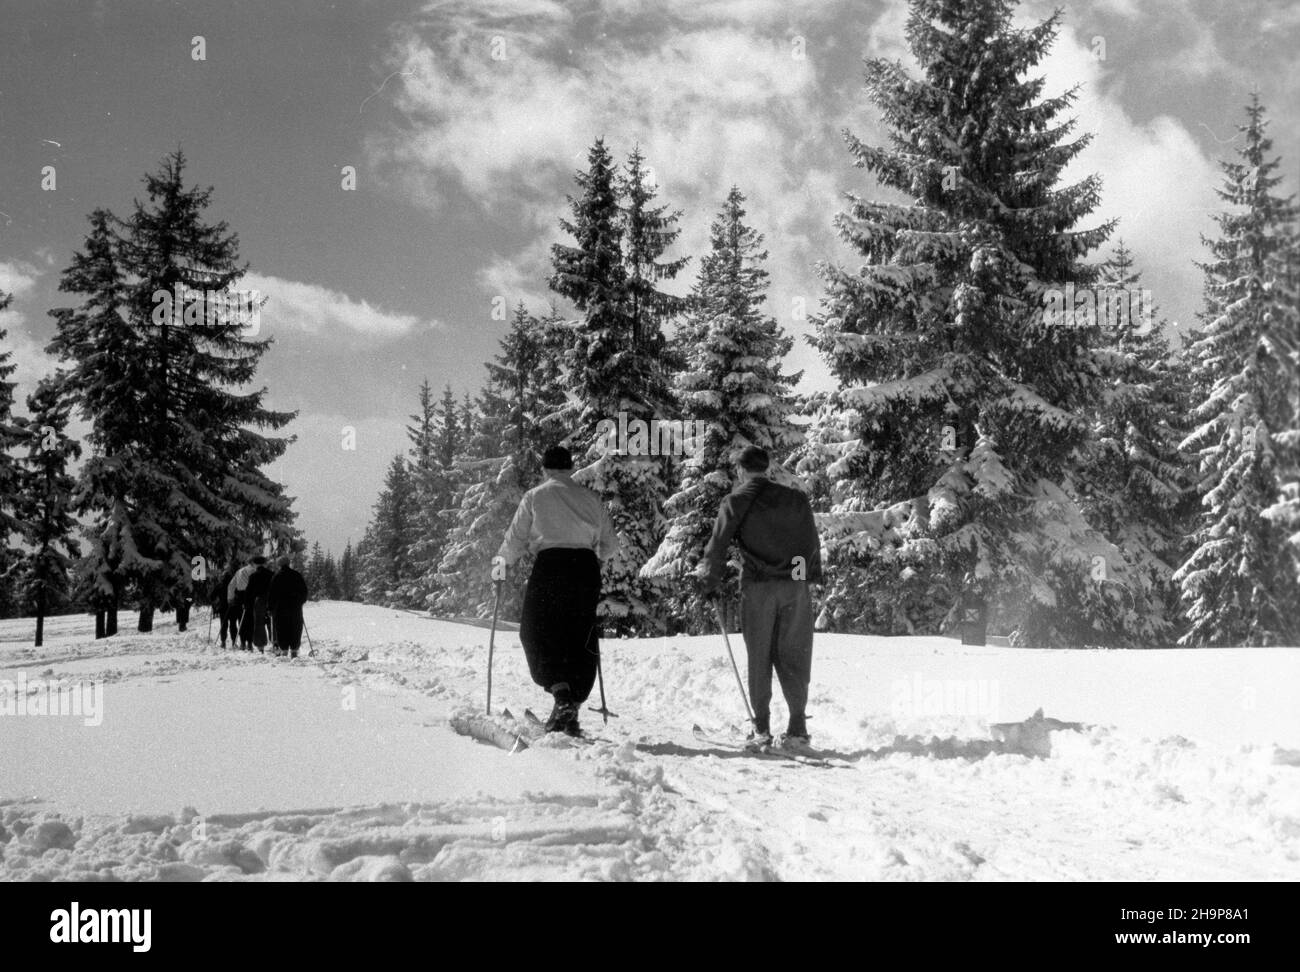 Zakopane, 1949-02. Tatrzañska turystyka zimowa.  mw  PAP    Dok³adny dzieñ wydarzenia nieustalony.      Zakopane, Feb. 1949. Winter tourism in the Tatra Mountains.   mw  PAP Stock Photo